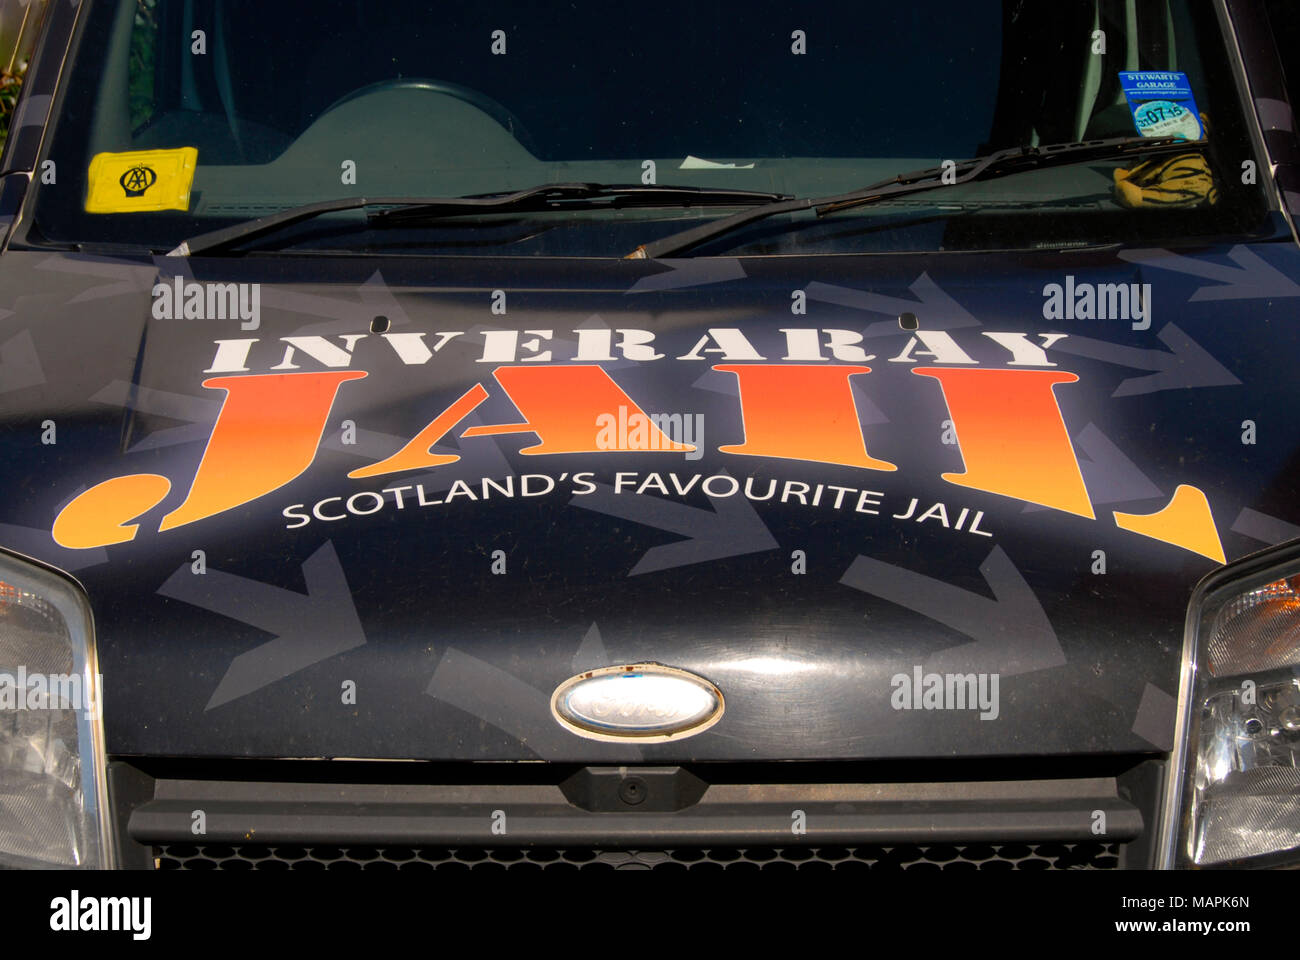 Fahrzeug mit Werbung für Inveraray Jail, Schottland, auf der Motorhaube Stockfoto